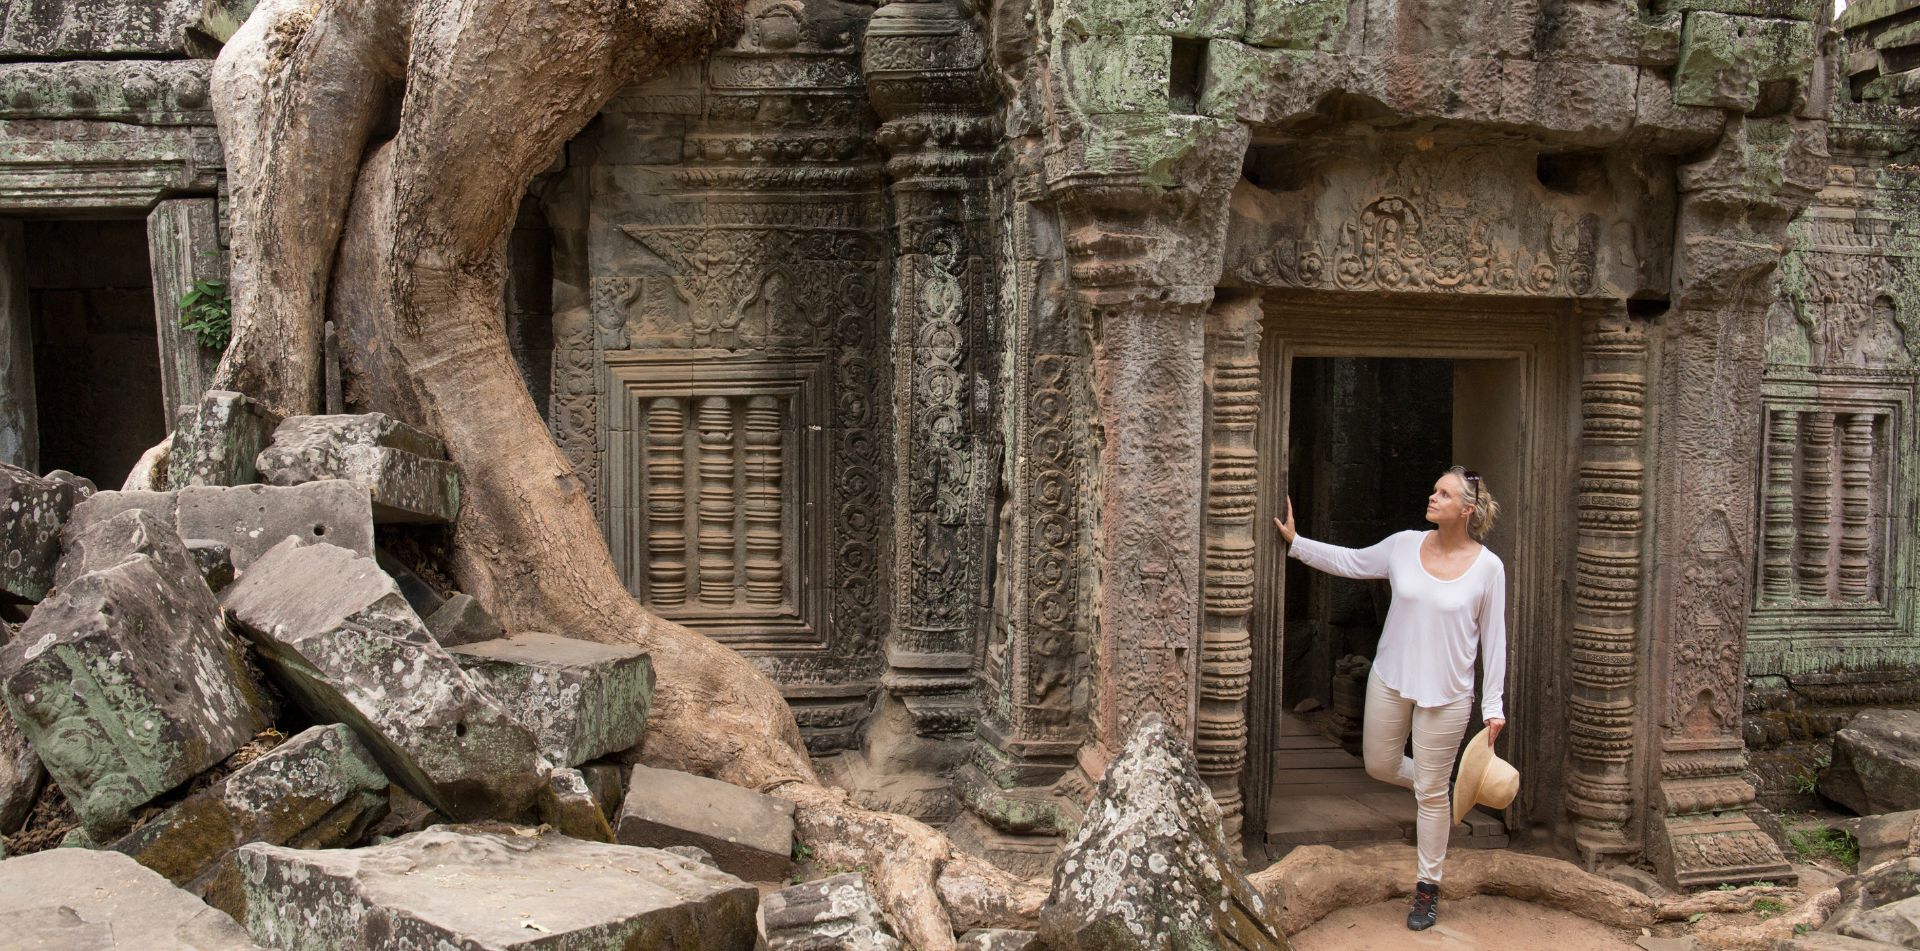 Traveler admiring the views of Angkor Wat, Cambodia